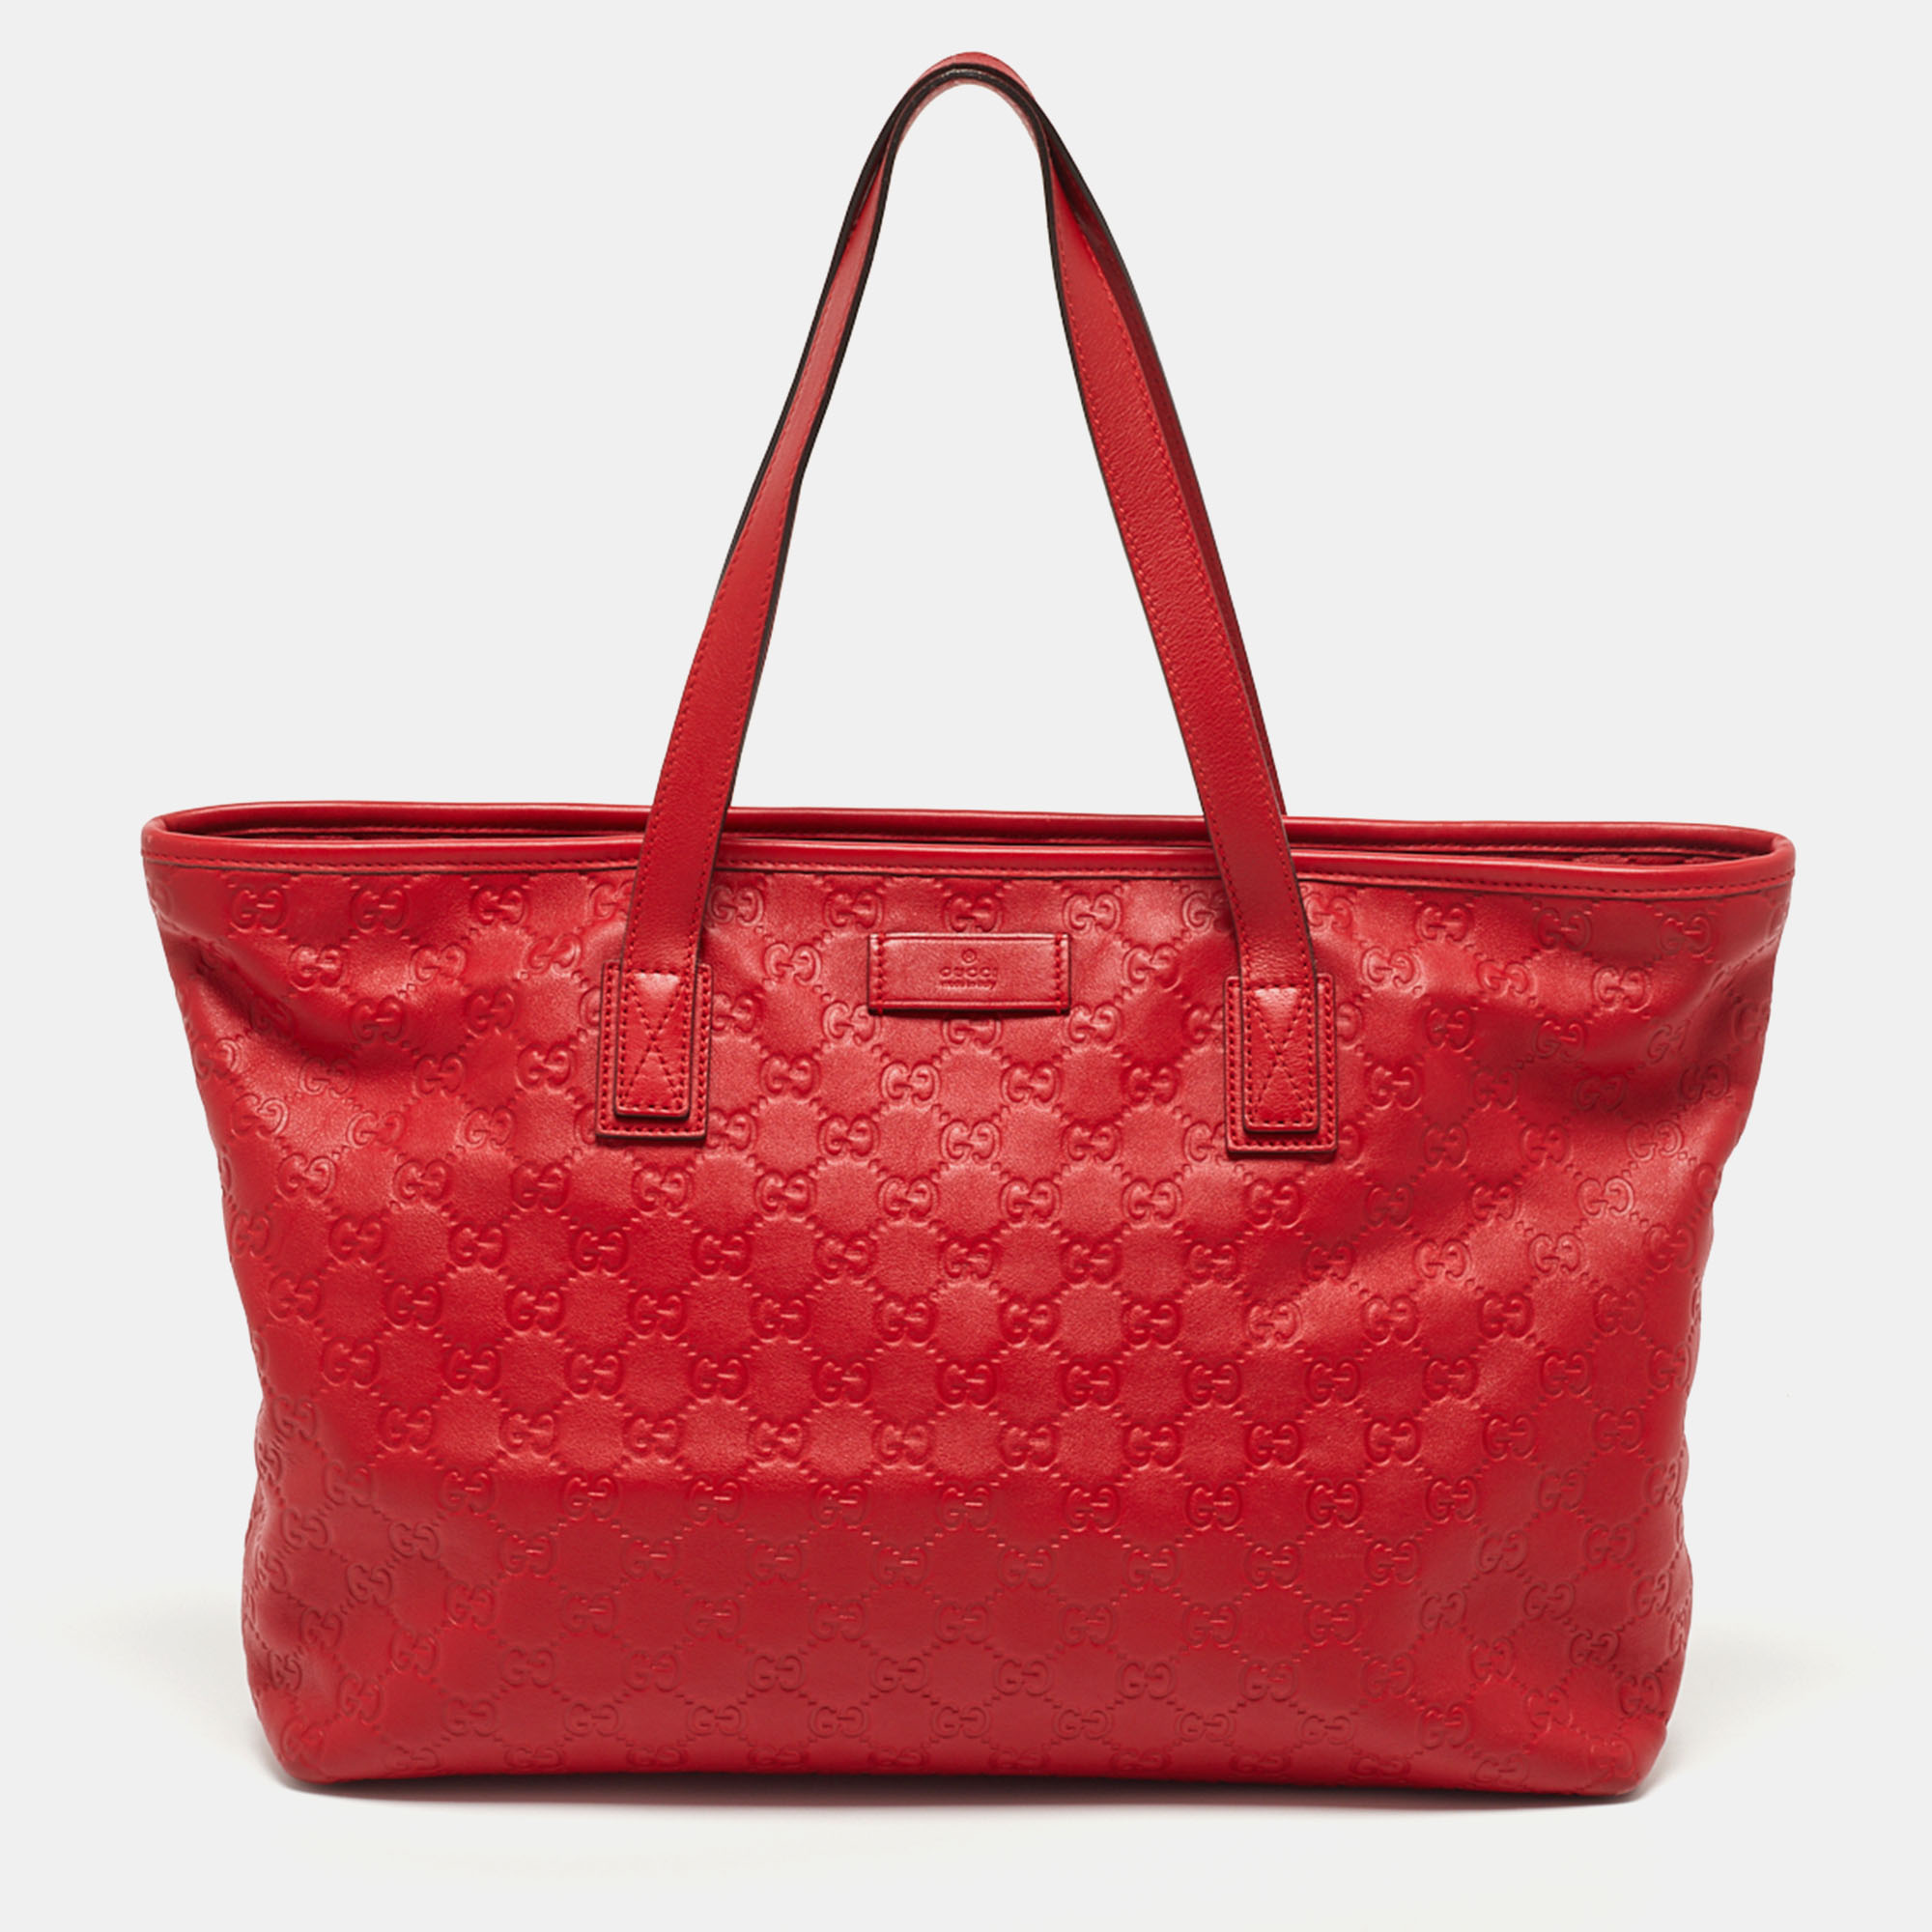 Gucci Red Guccissima Leather Zipped Shopper Tote